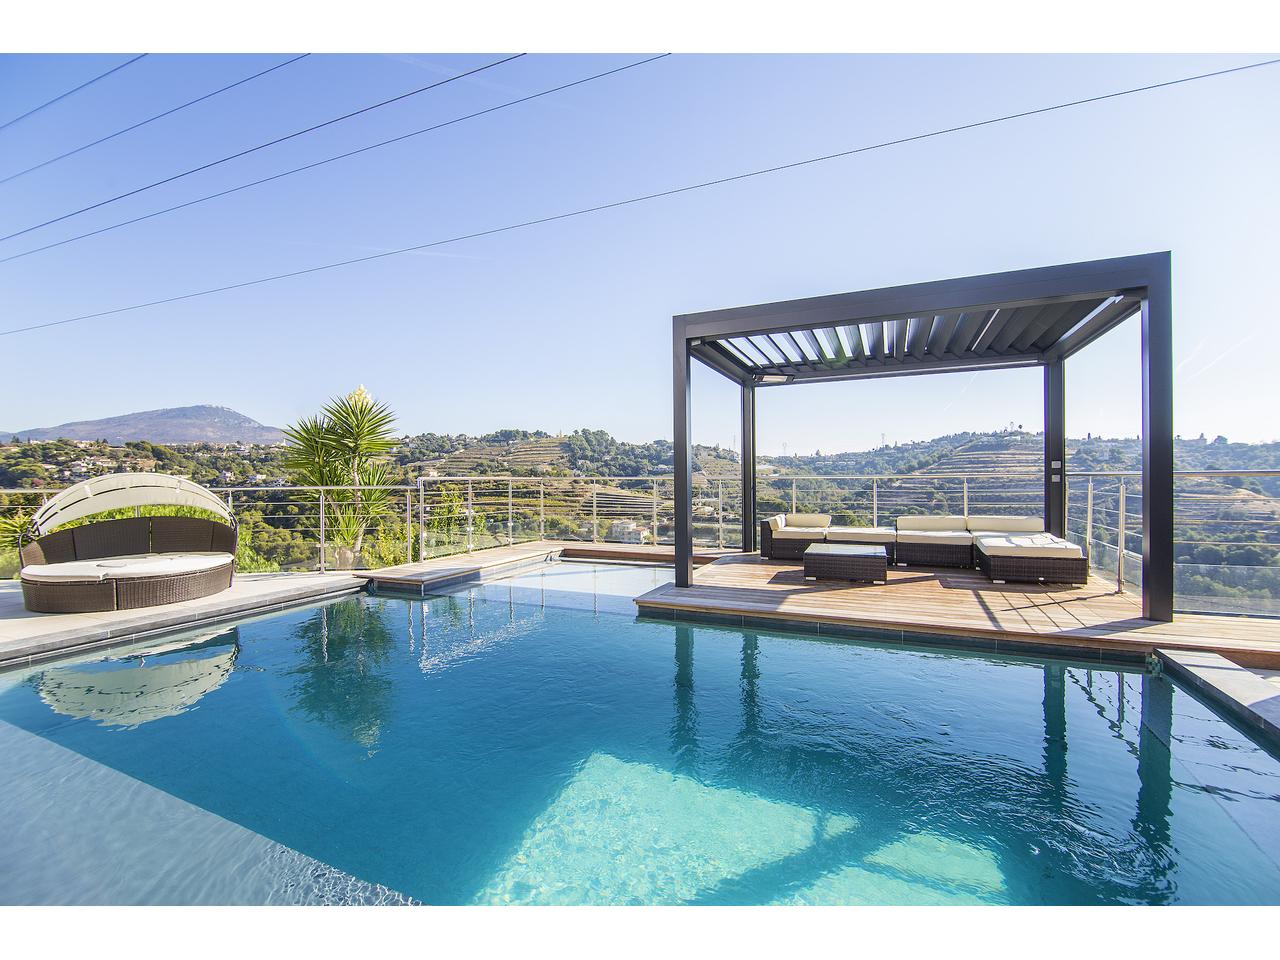 Nice Bellet – Magnifique villa au calme avec piscine à débordement et vue dégagée